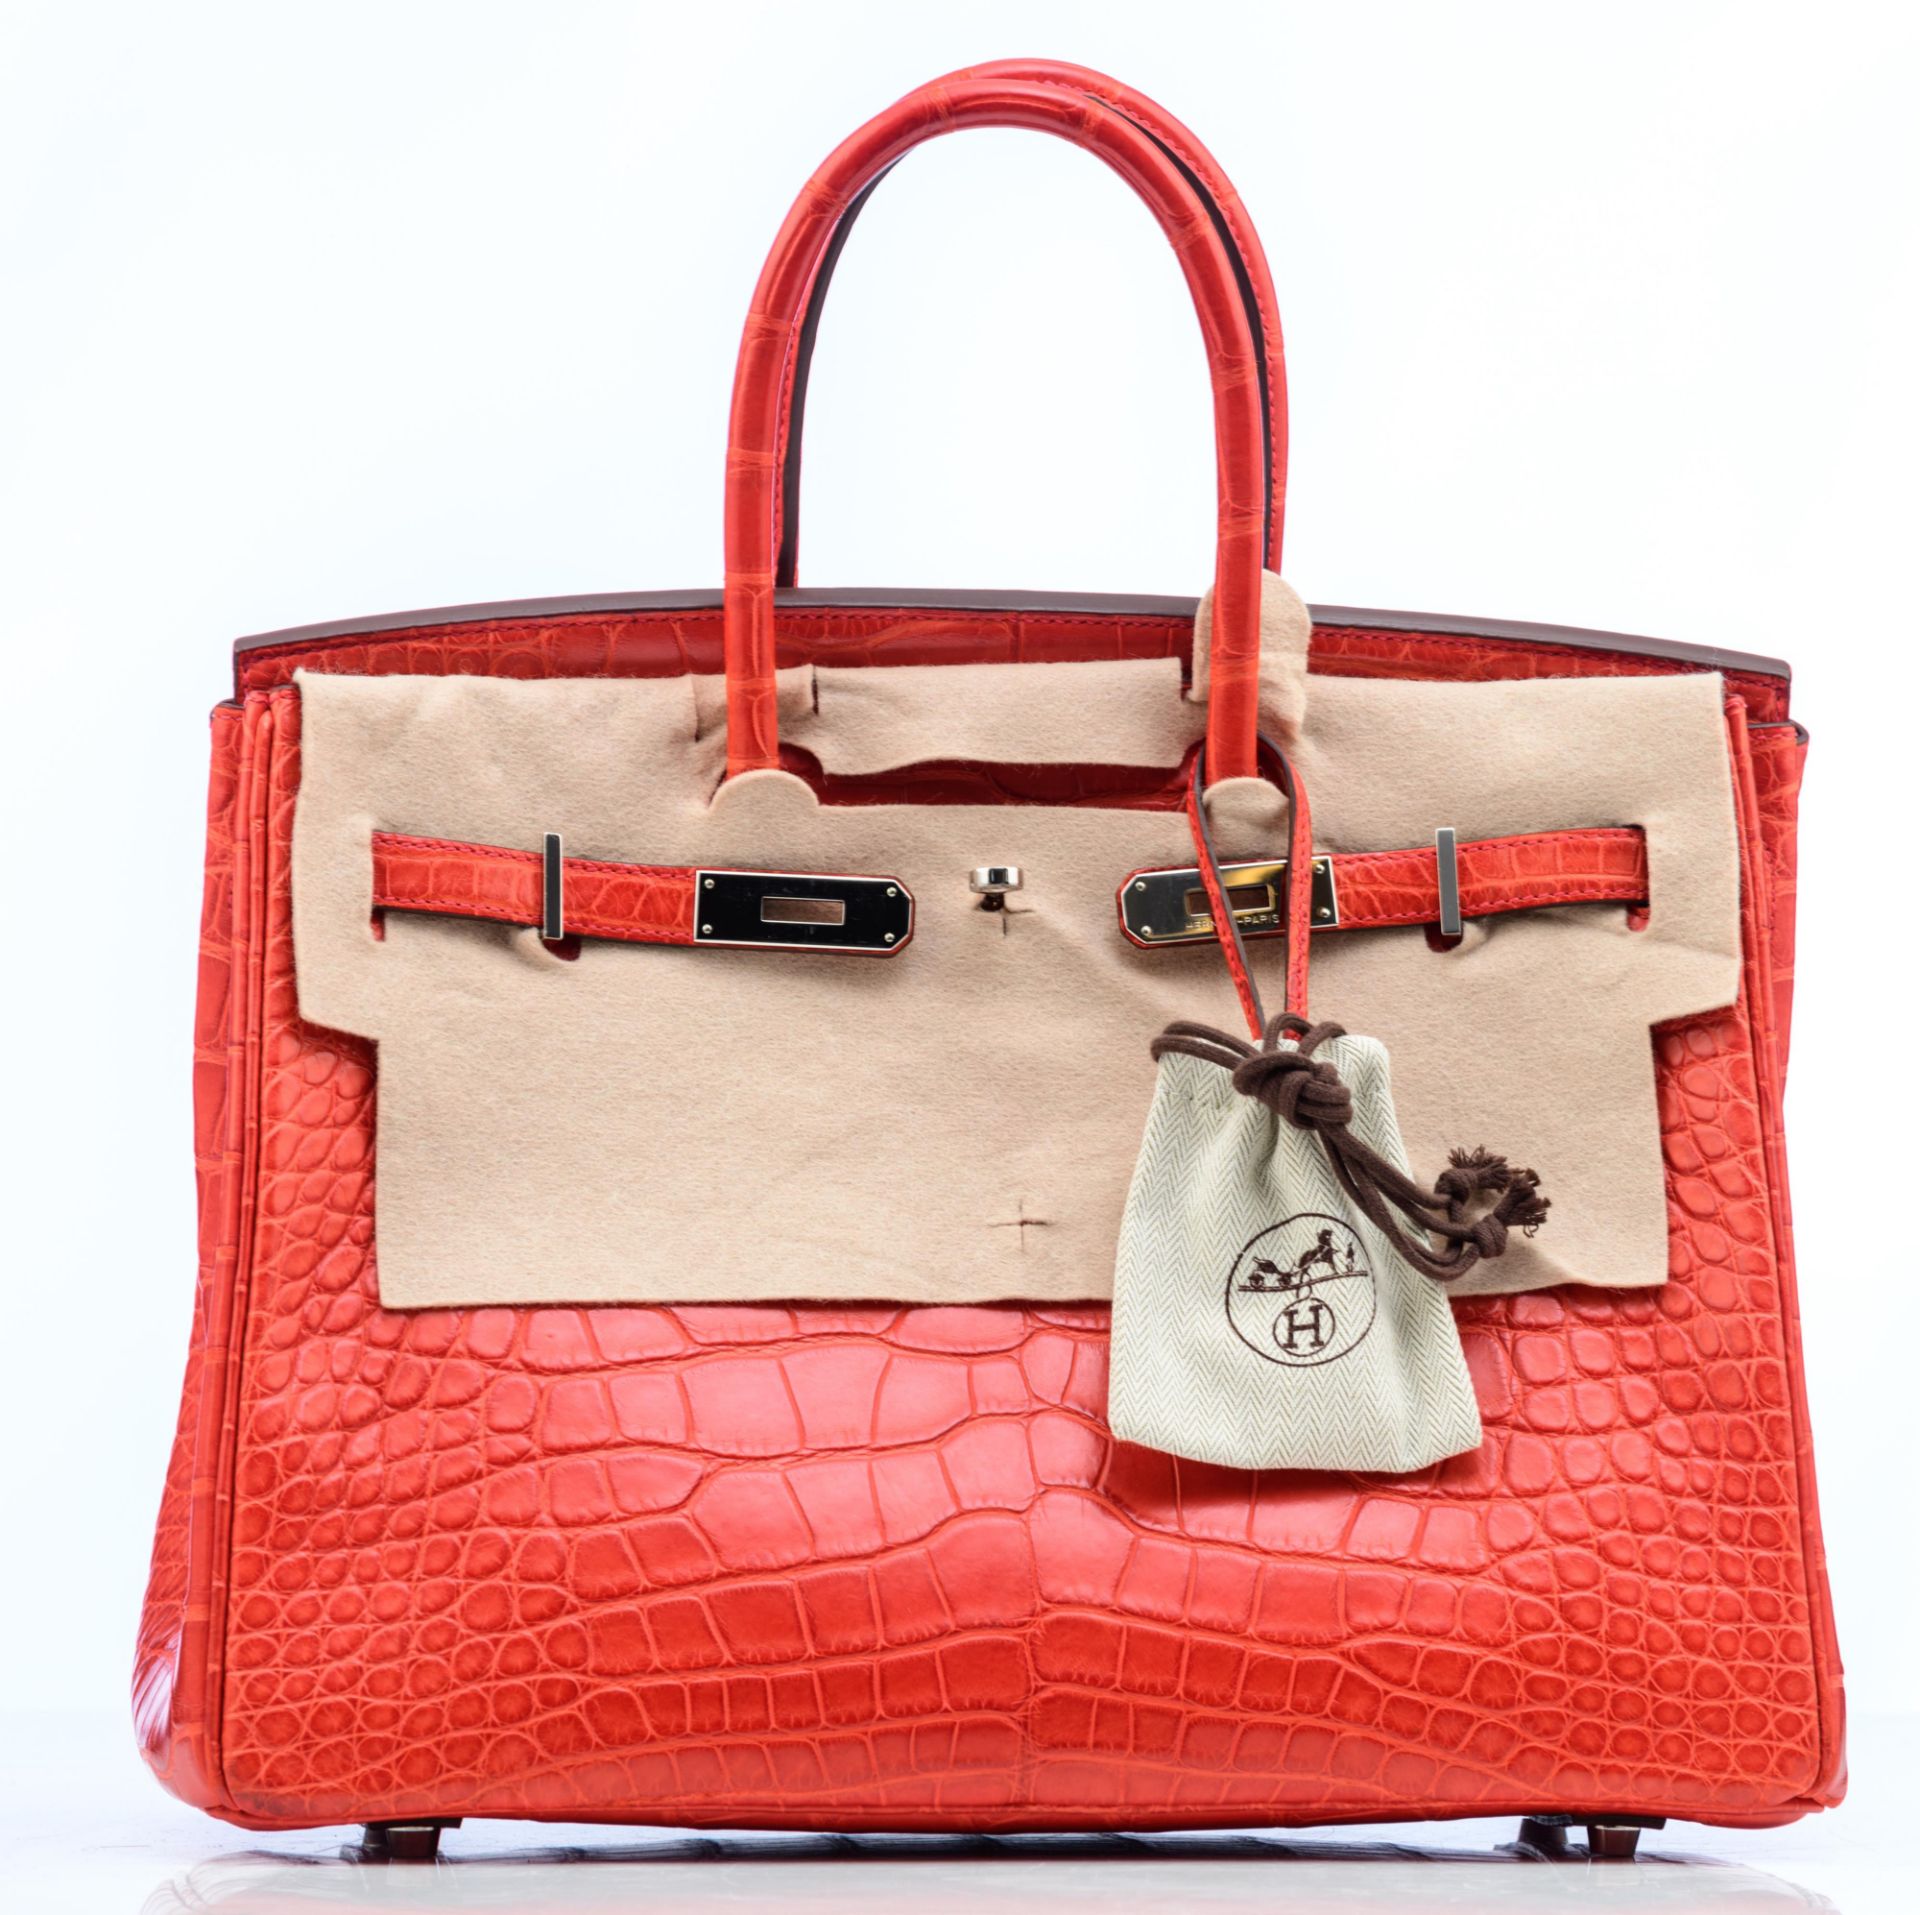 HERMÈS, Birkin 35 handbag, Geranium alligator mississippiensis matte leather, with palladium hardwar - Image 3 of 22